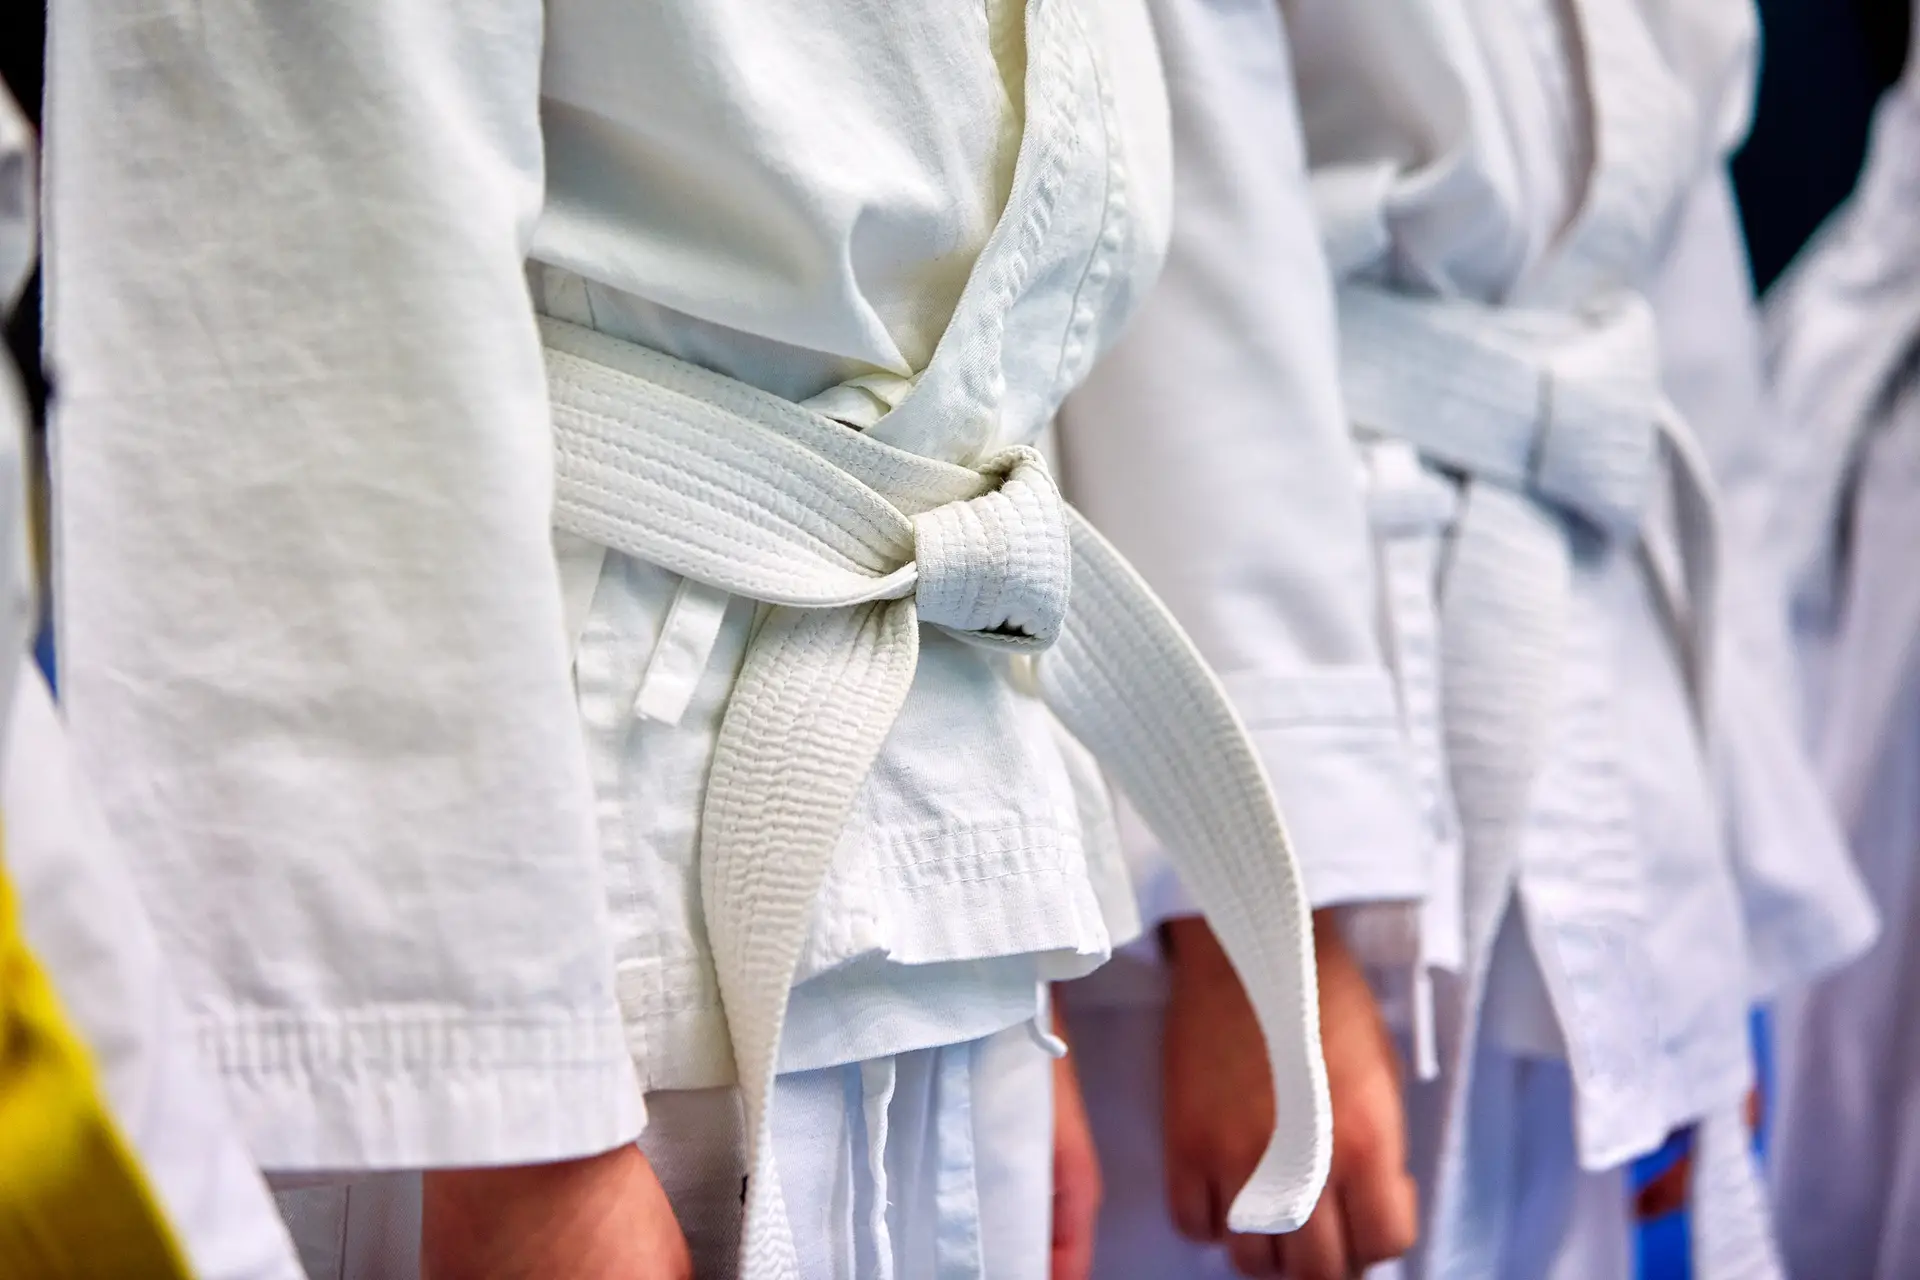 Polémica no Judo: Federação admite levar sete atletas a tribunal